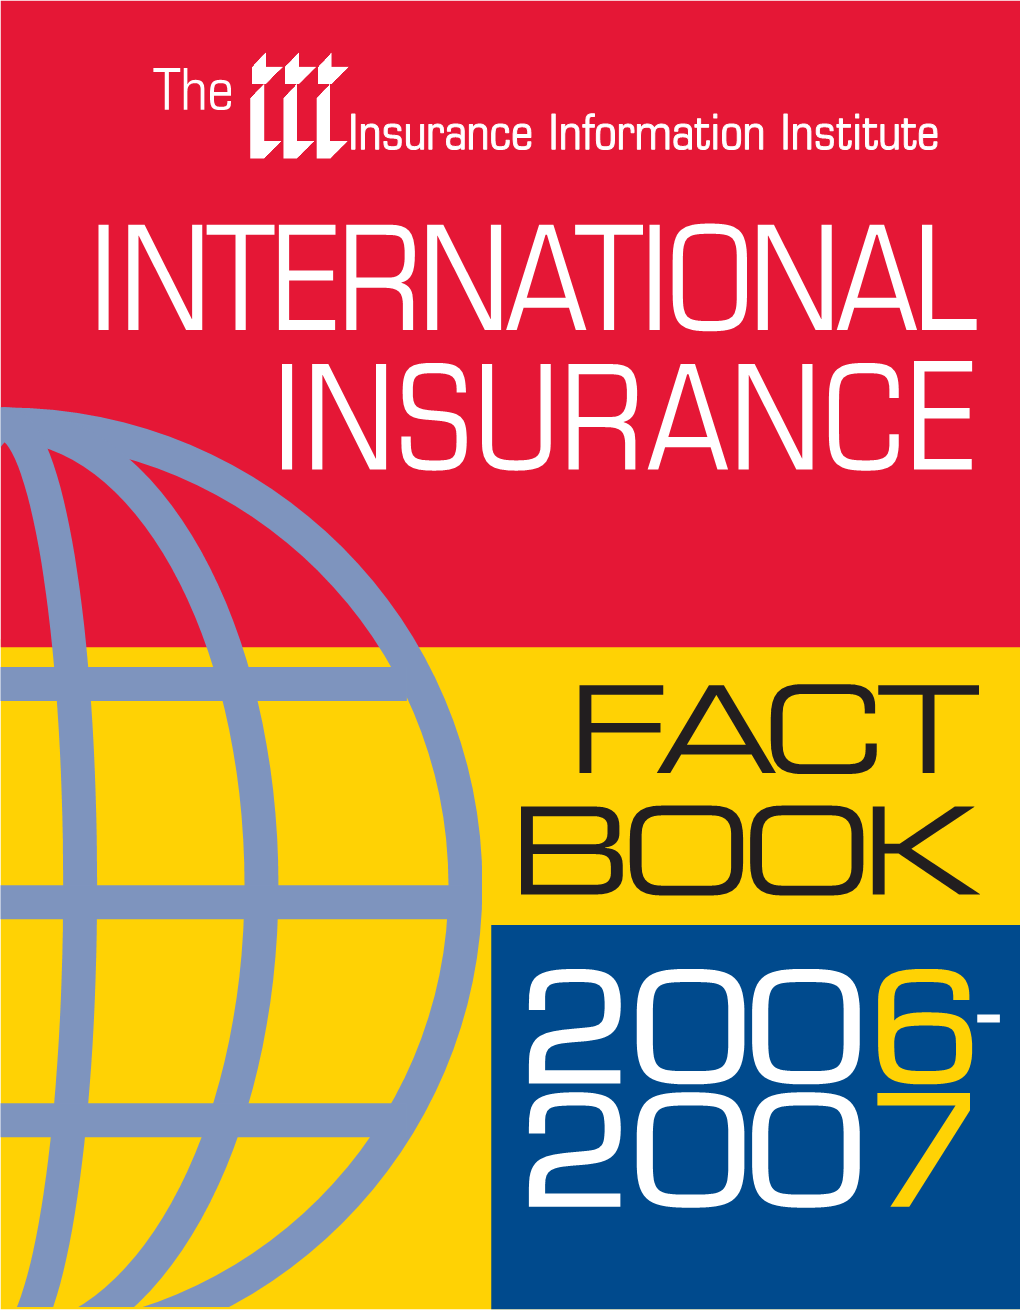 Fact Book 2006- 2007